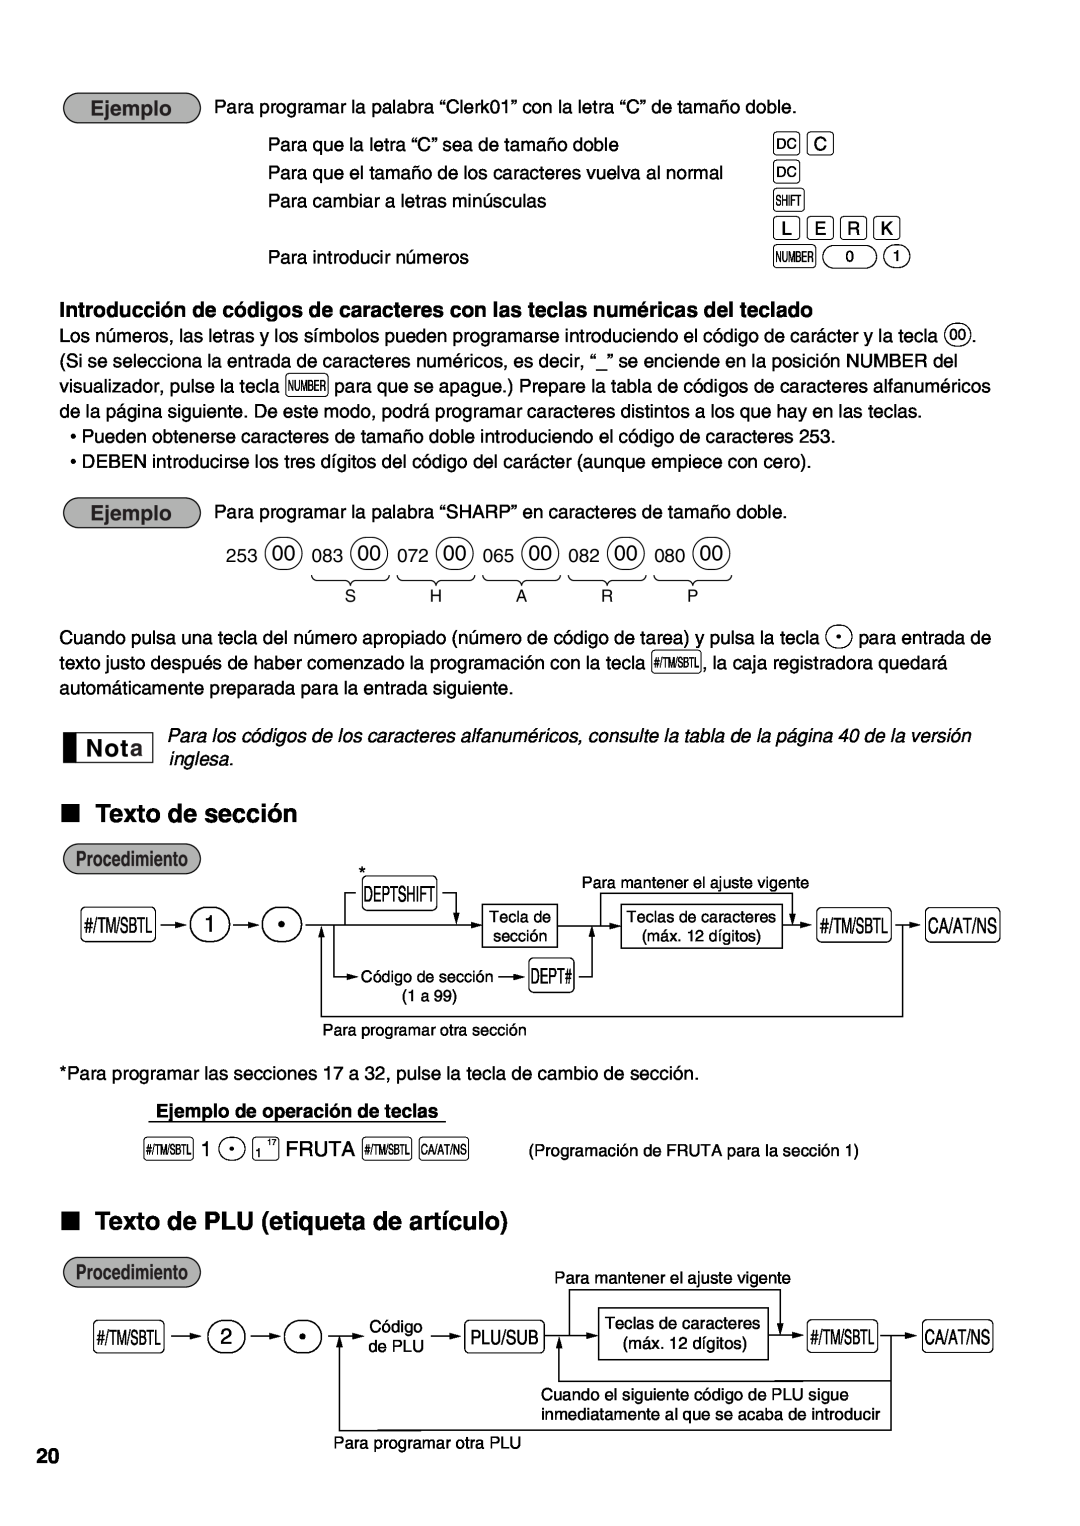 Sharp XE-A21S instruction manual Texto de sección, Texto de PLU etiqueta de artículo, s 1 P!FRUTA sA, Wg W H hijk N01 